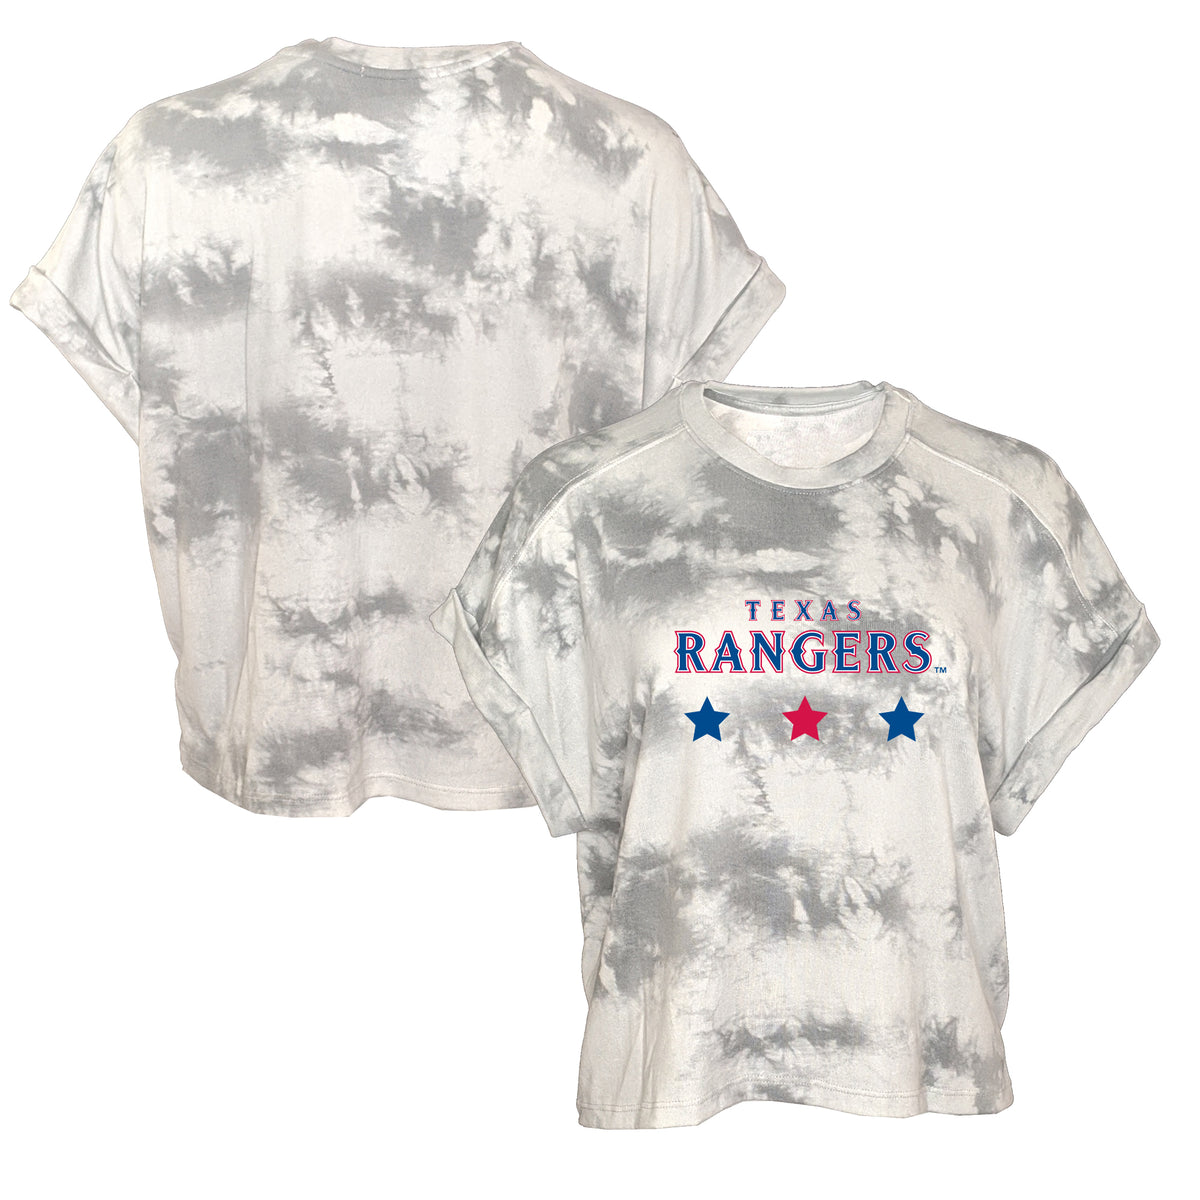 Texas Rangers Women's Tie Dye Lounge Tee